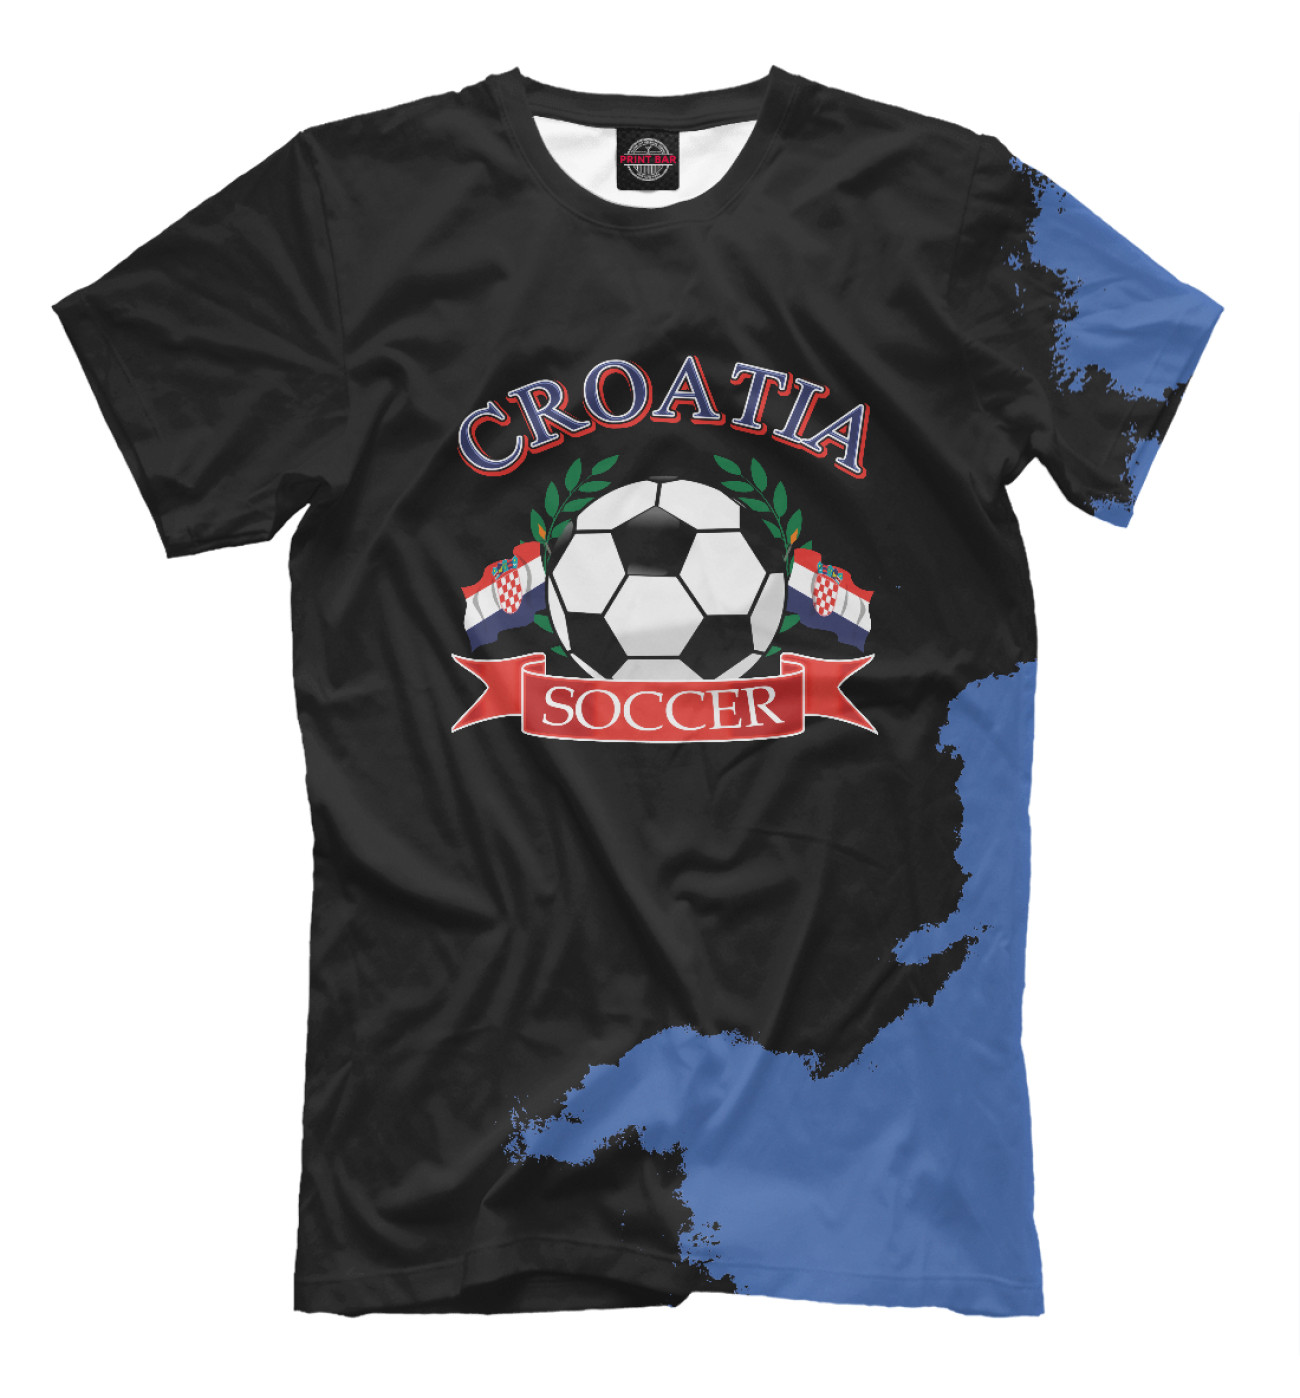 Мужская Футболка Croatia soccer ball, артикул: FTO-670002-fut-2